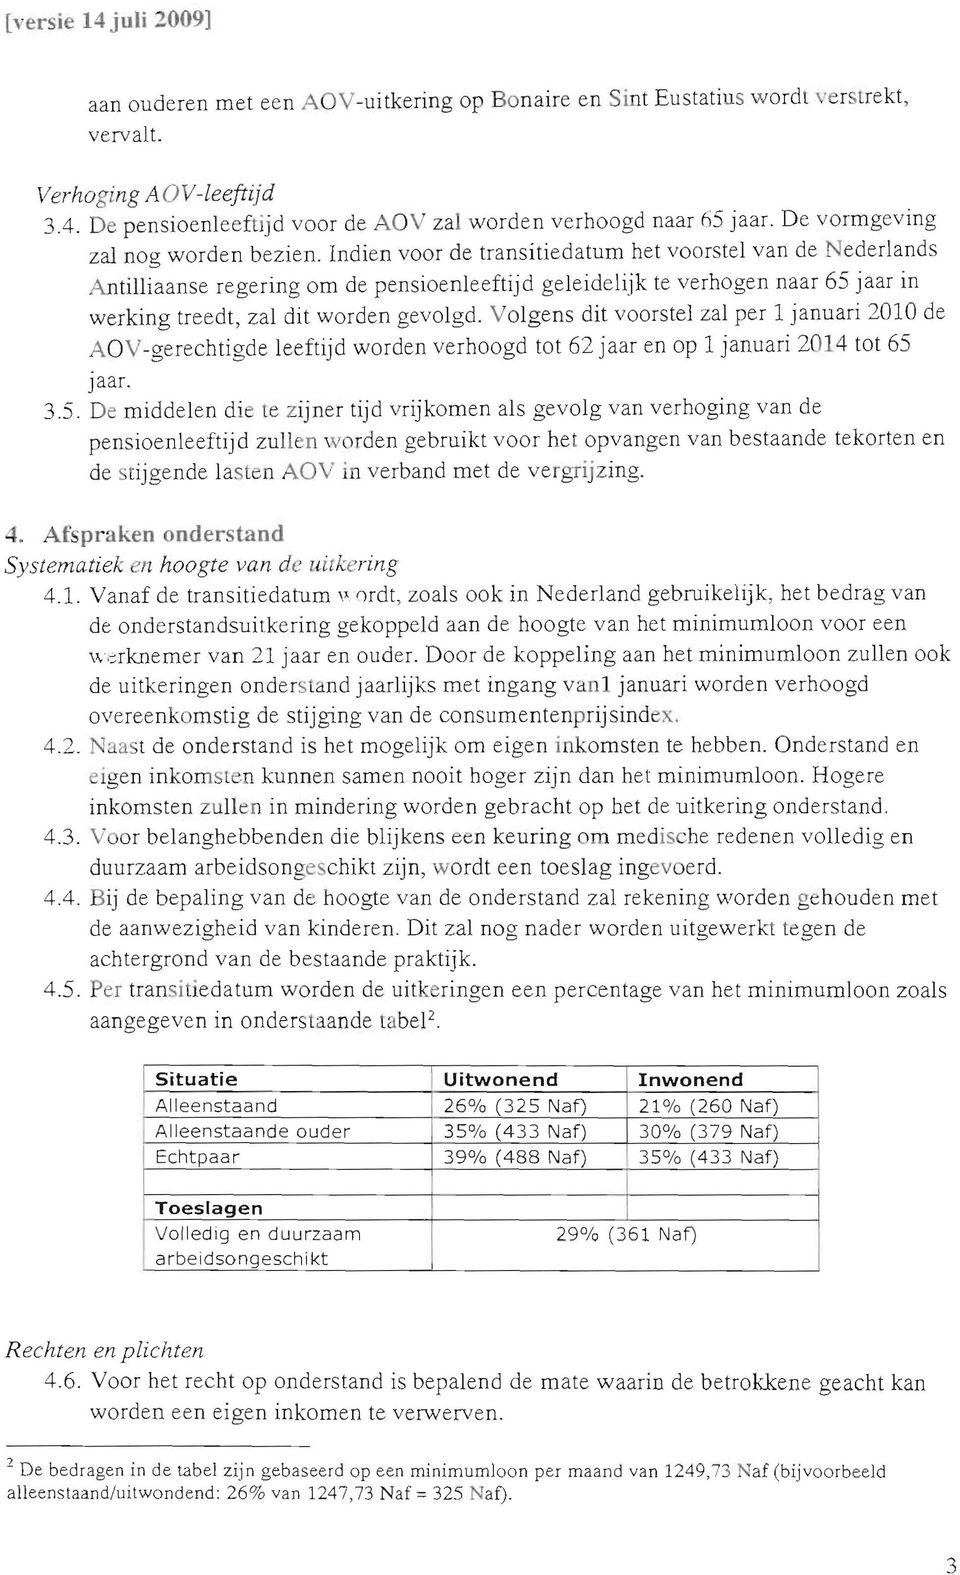 Indien voor de transitiedatum het voorstel van de Nederlands Antilliaanse regering om de pensioenleeftijd geleidelijk te verhogen naar 65 jaar in werking treedt, zal dit worden gevolgd.